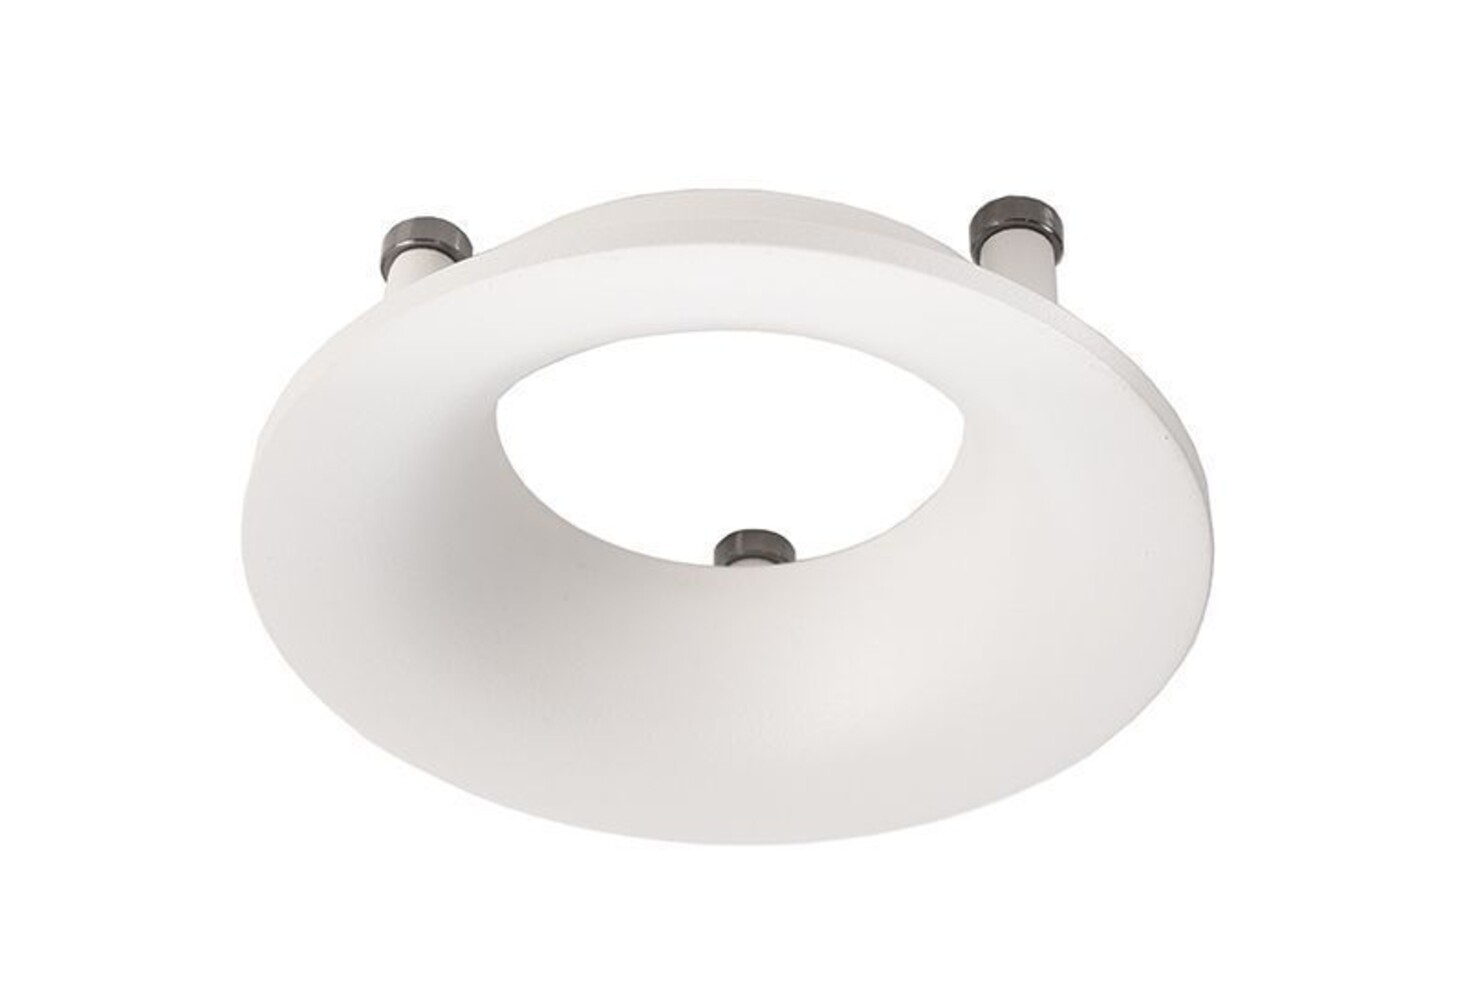 Ein elegantes und praktisches Zubehör von der Marke Deko-Light, der Reflektor Ring in Weiß für die Serie Uni II Mini ist wunderscön in seiner Einfachheit und Funktionalität.